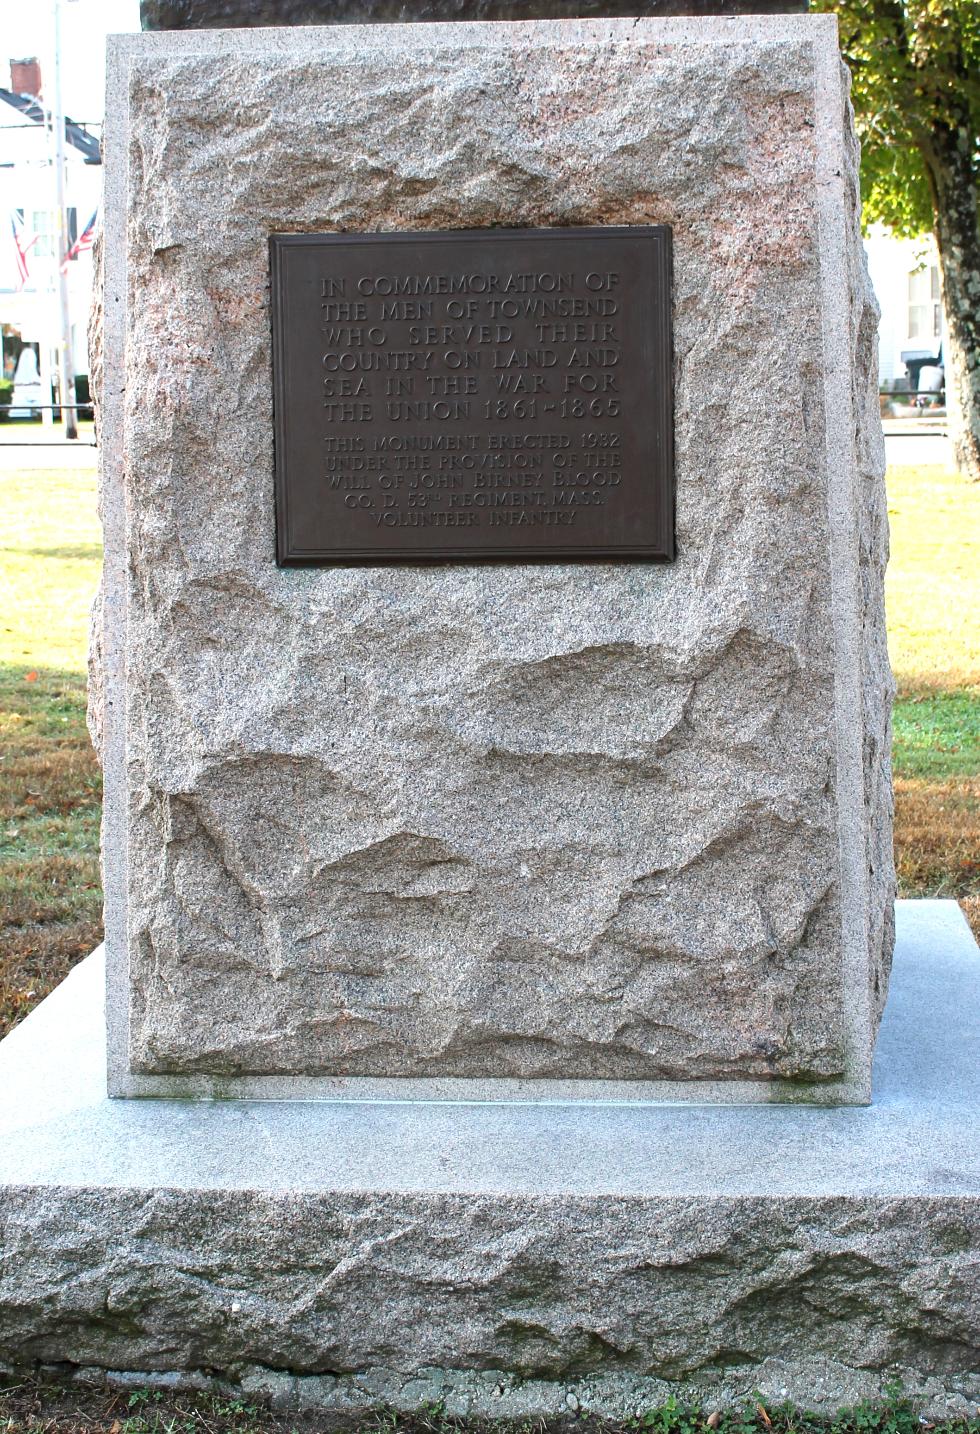 Townsend Massachusetts Civil War Veterans Memorial